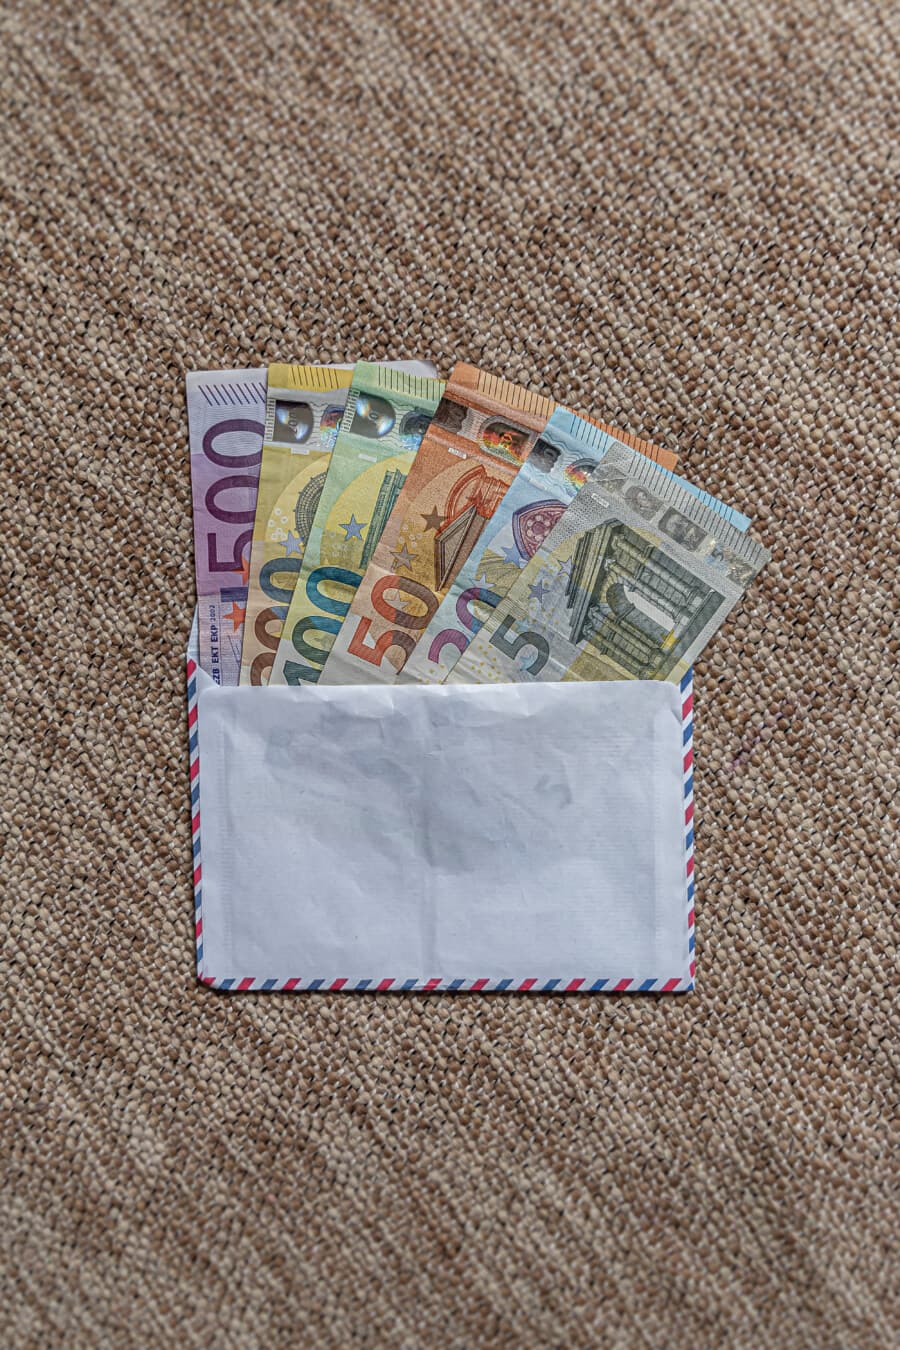 Umschlag, Europäische Union, Banknote, Euro, Papiergeld, Einsparungen, Einkommen, Geld, Währung, Bargeld